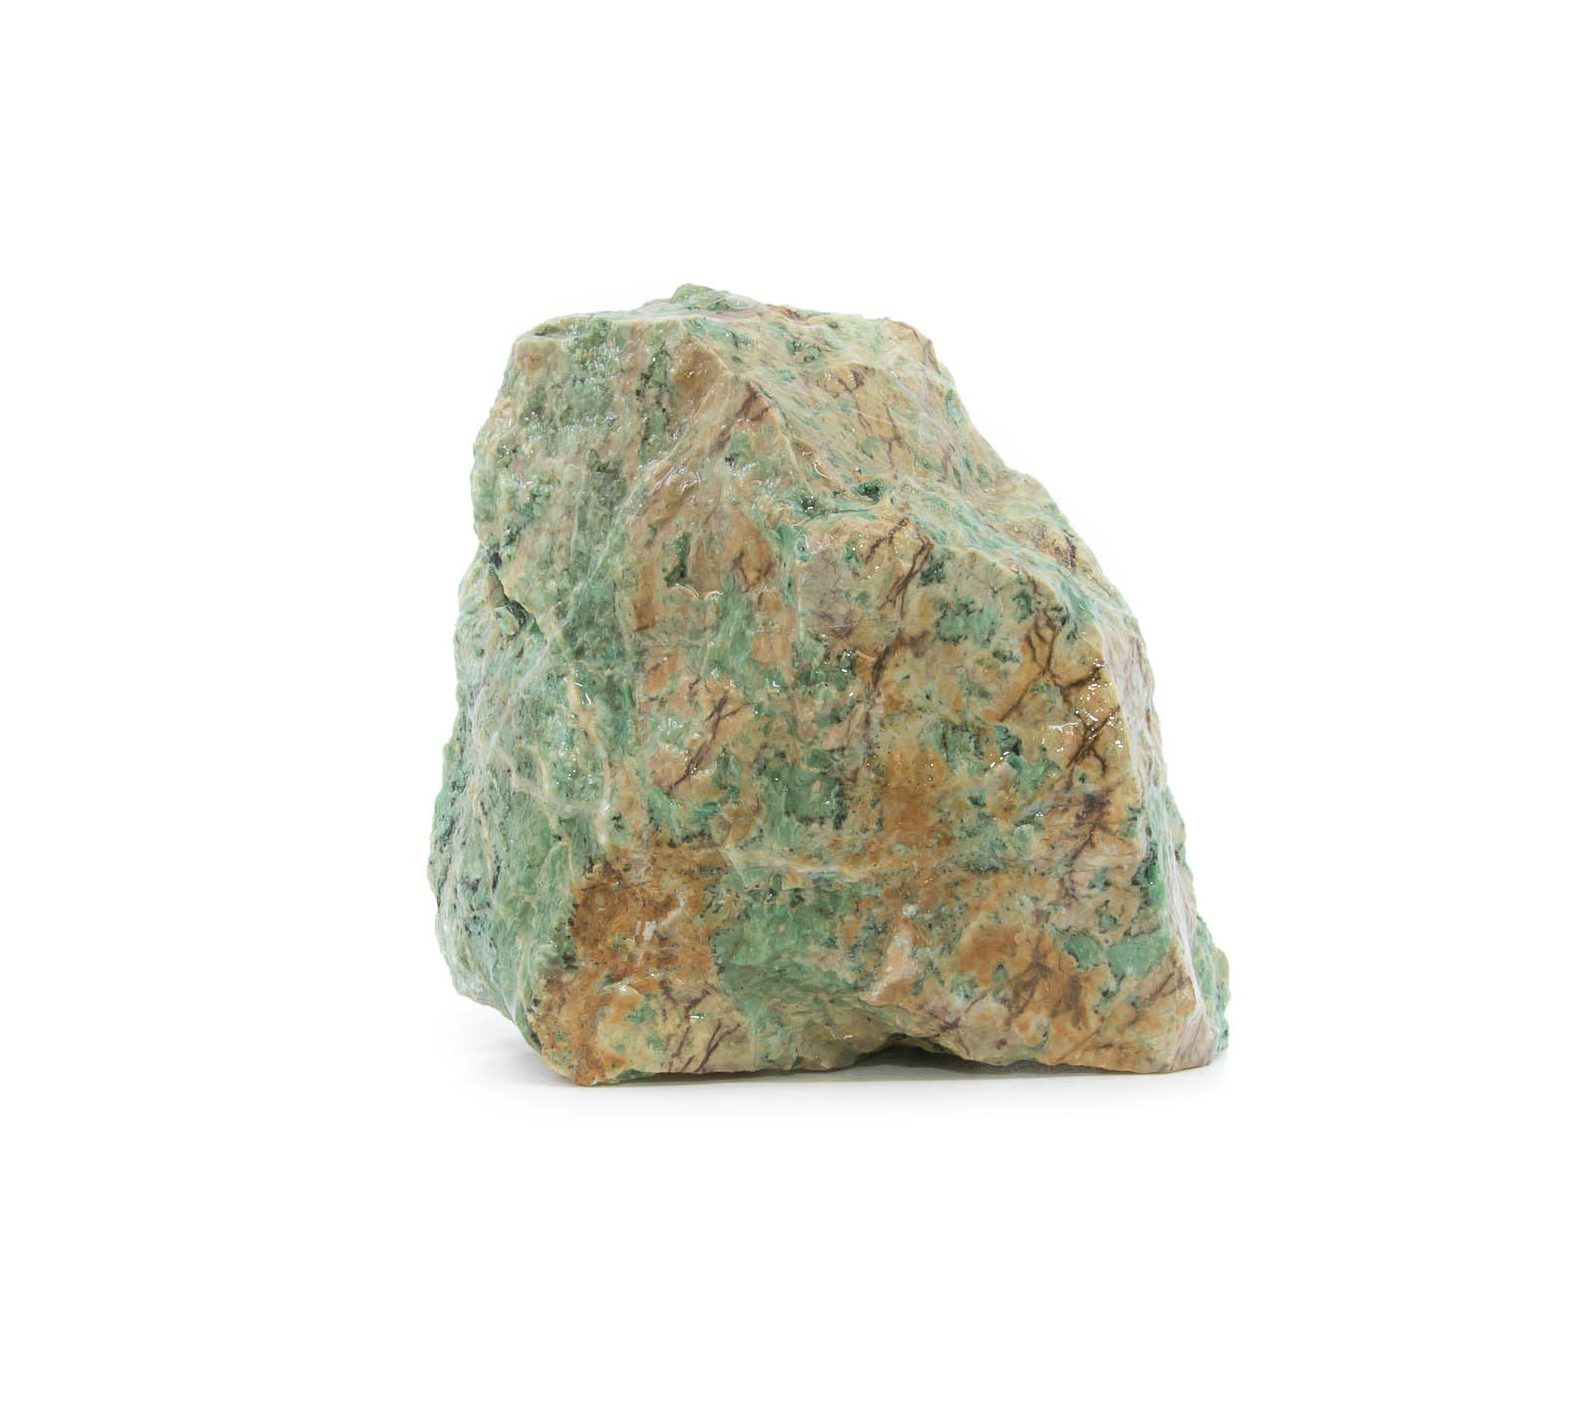 Garnierit Rohstein, weisser Hintergrund. grünem Stein mit Braunen Einschlüssen